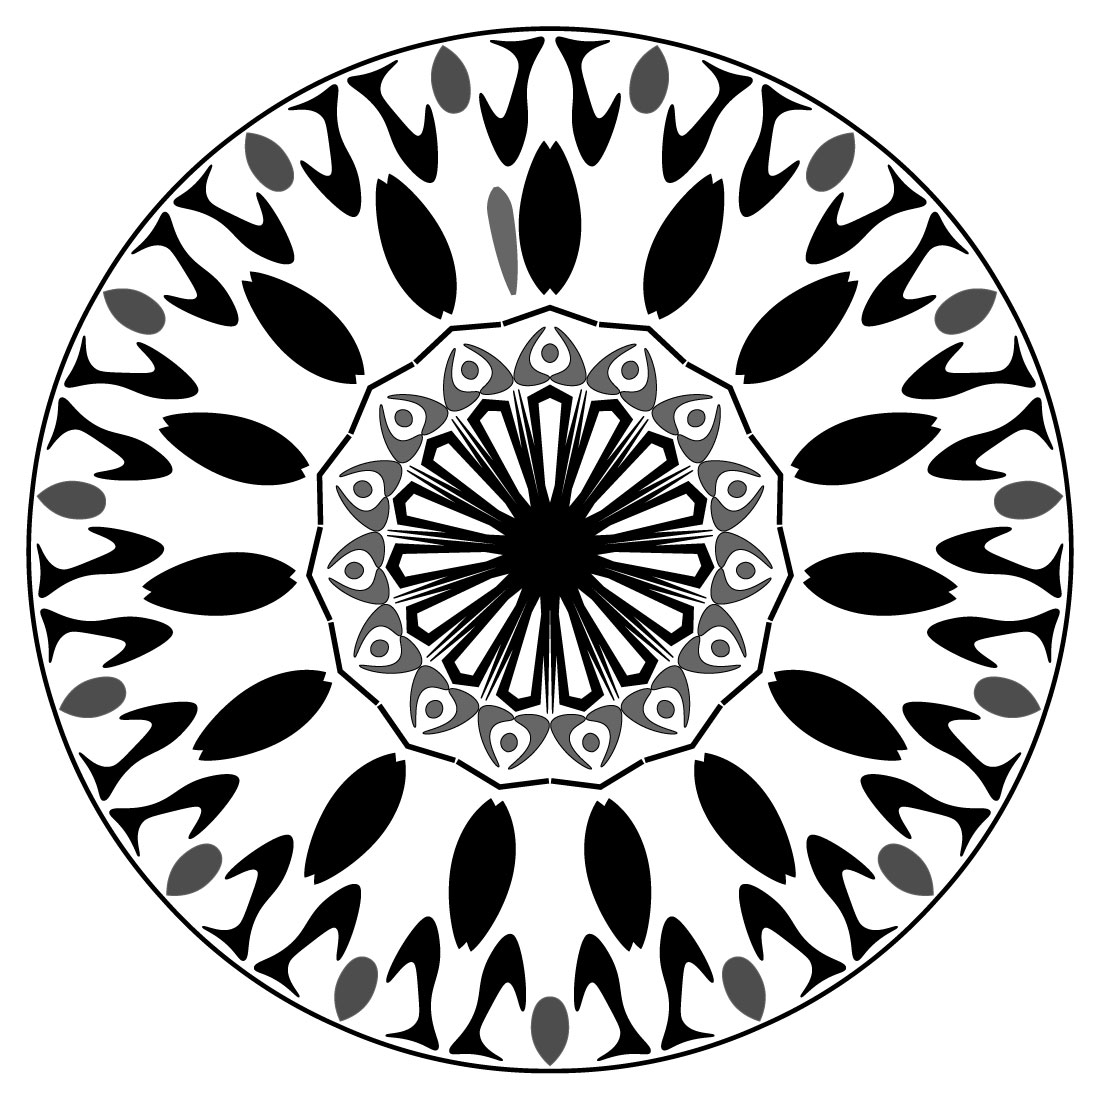 Mandala-art-with-fish-and-circuls preview image.